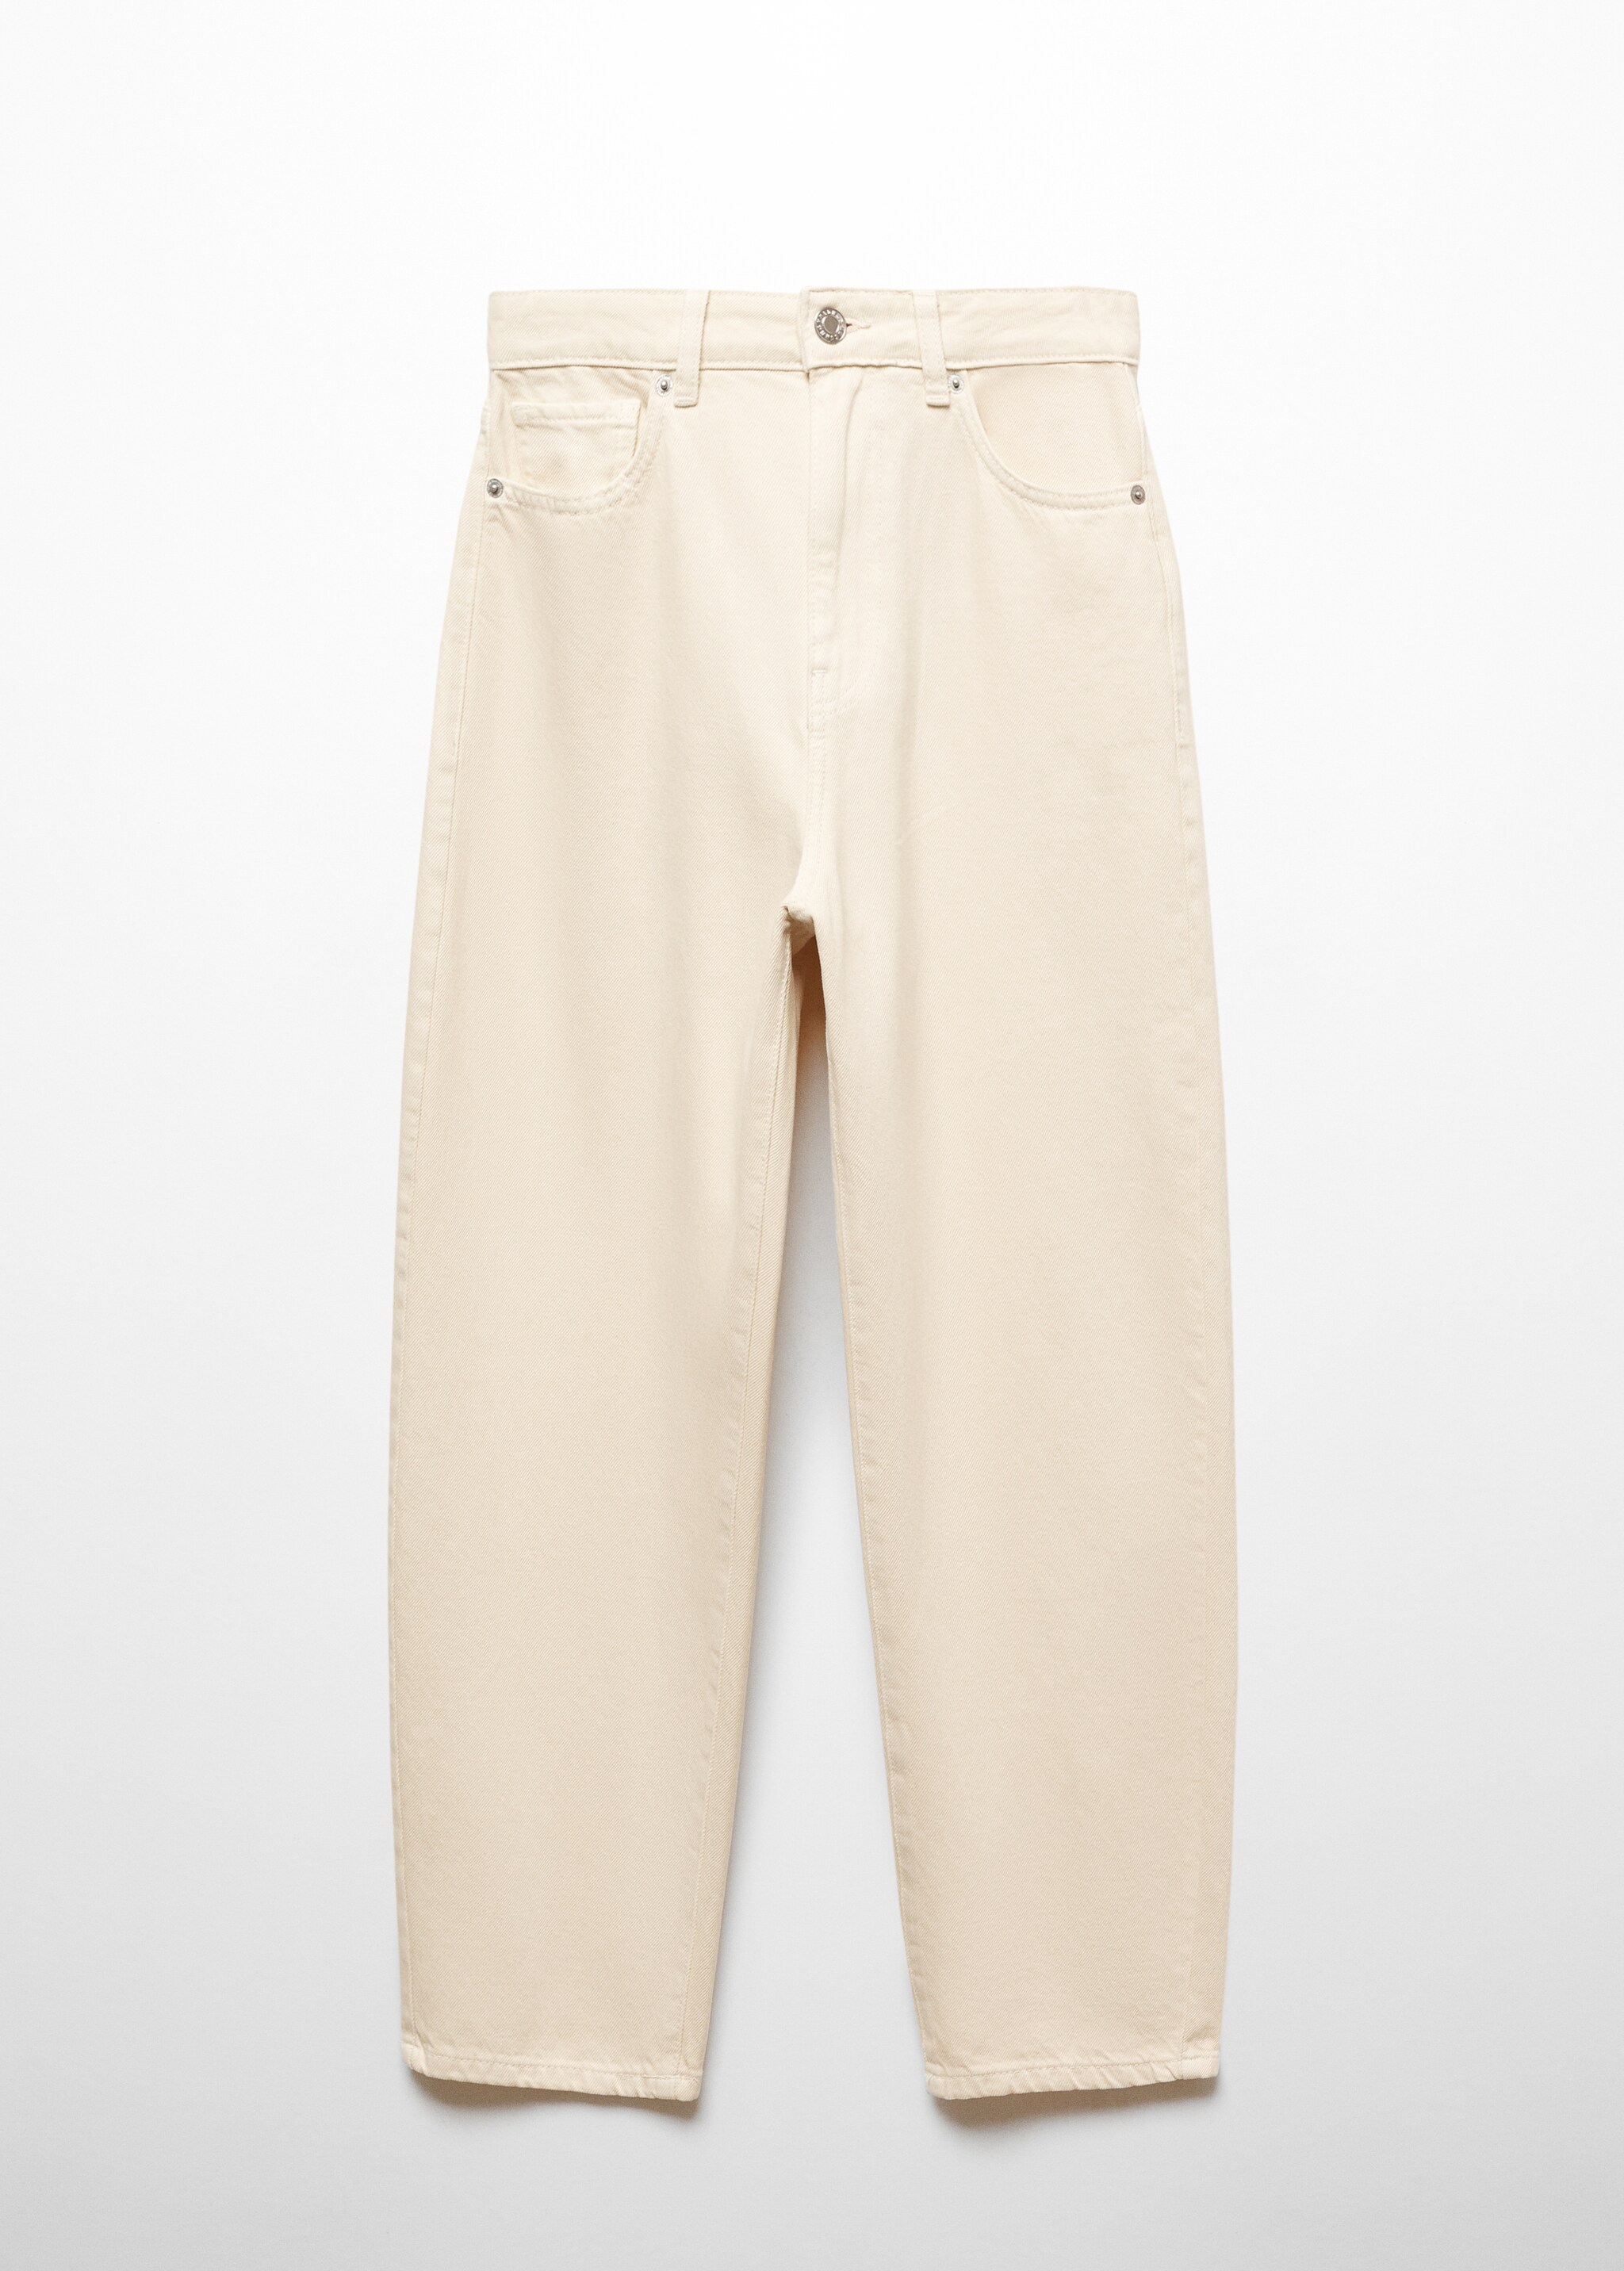 Yüksek bel slouchy jean pantolon  - Modelsiz ürün